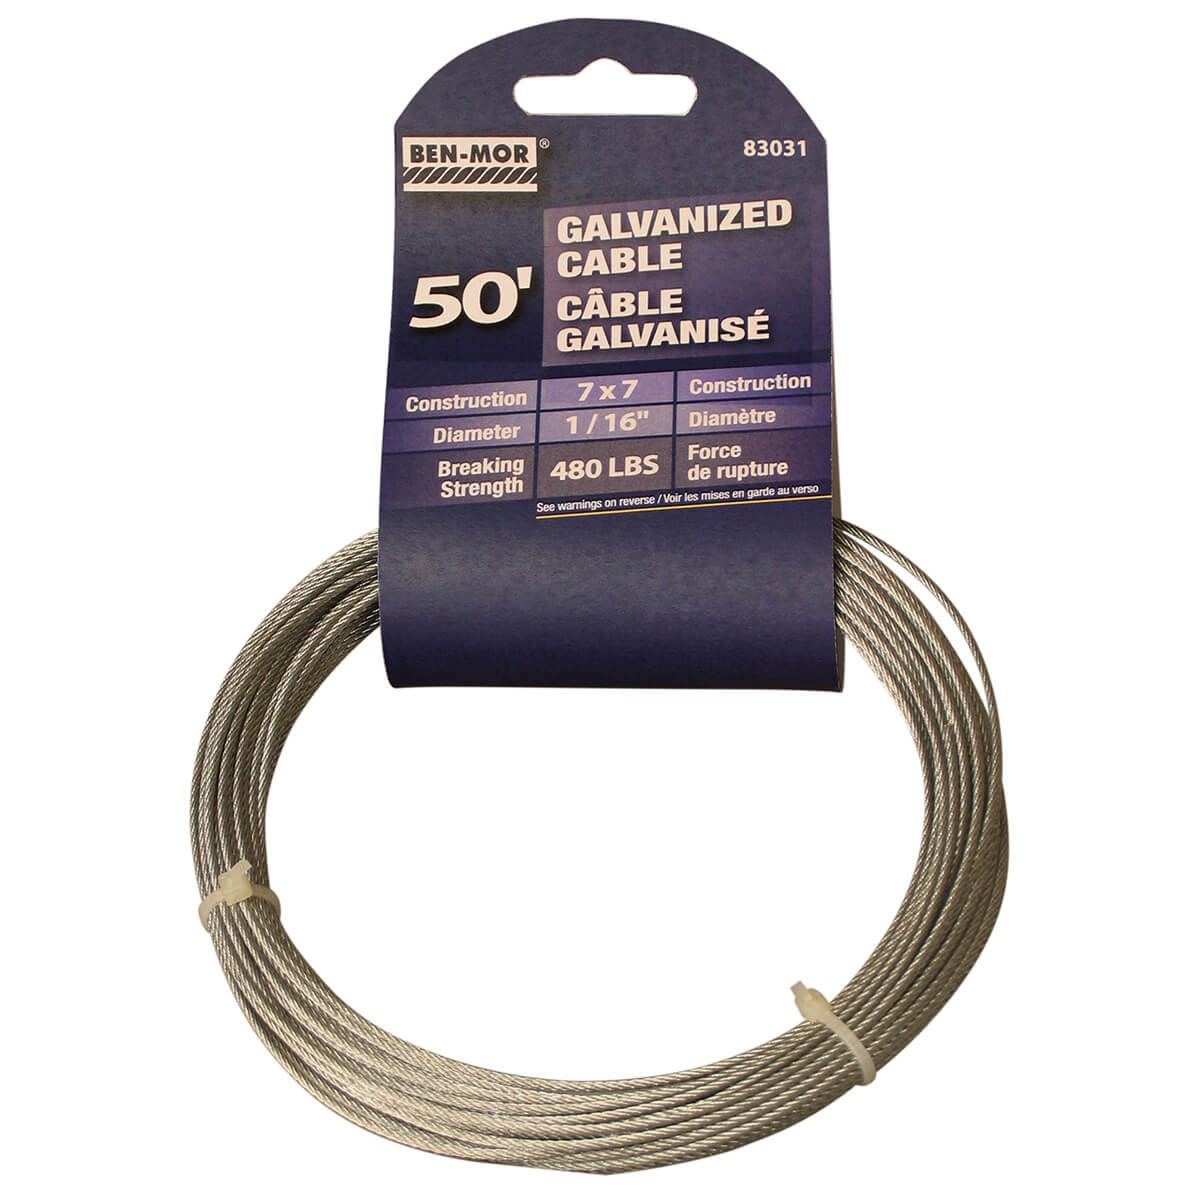 Galvanized Cable - Pre-Cut